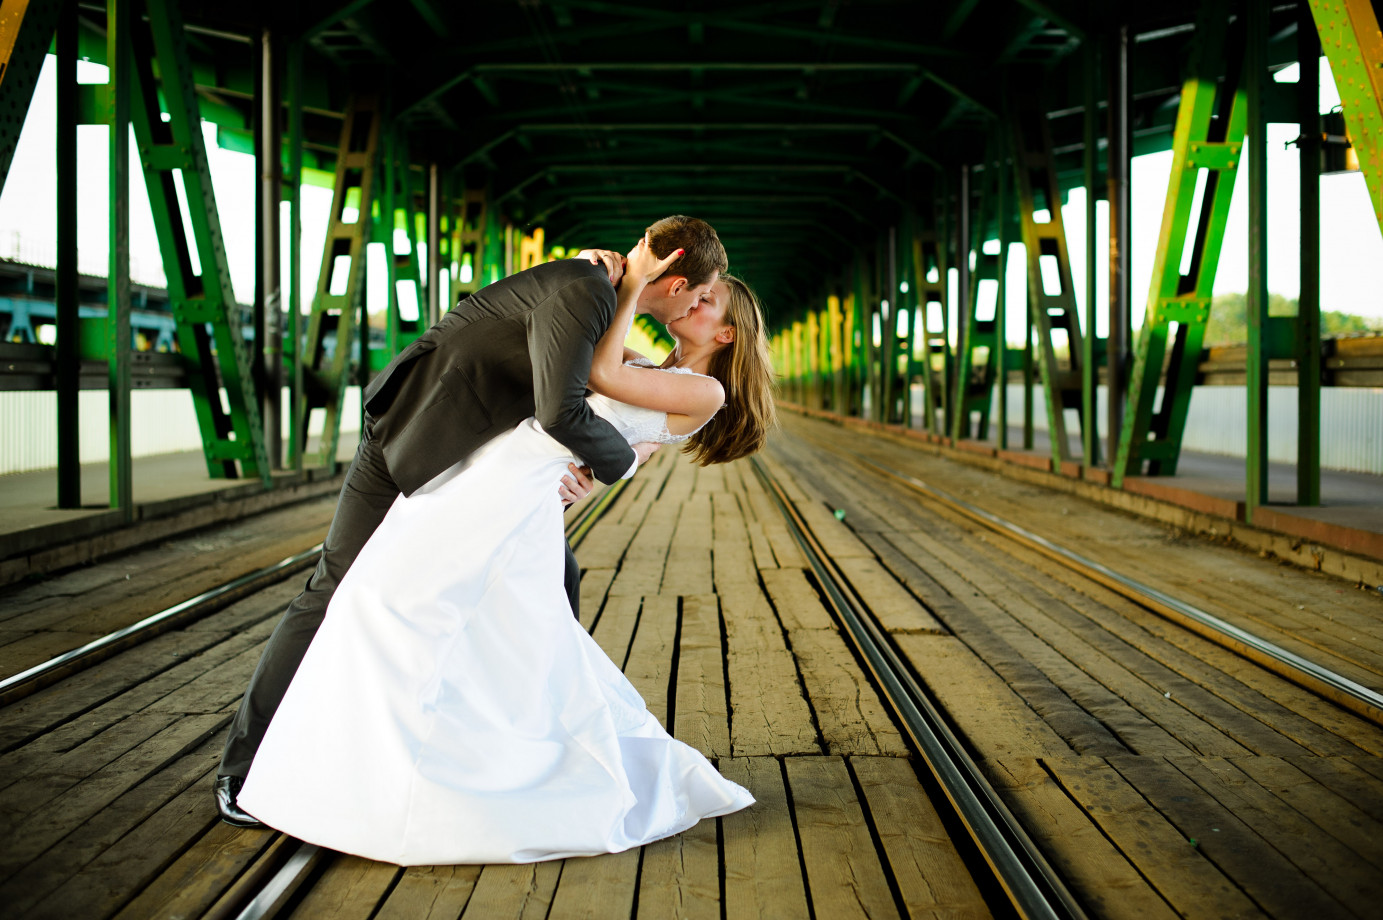 zdjęcia warszawa fotograf michal-wozniak portfolio zdjecia slubne inspiracje wesele plener slubny sesja slubna